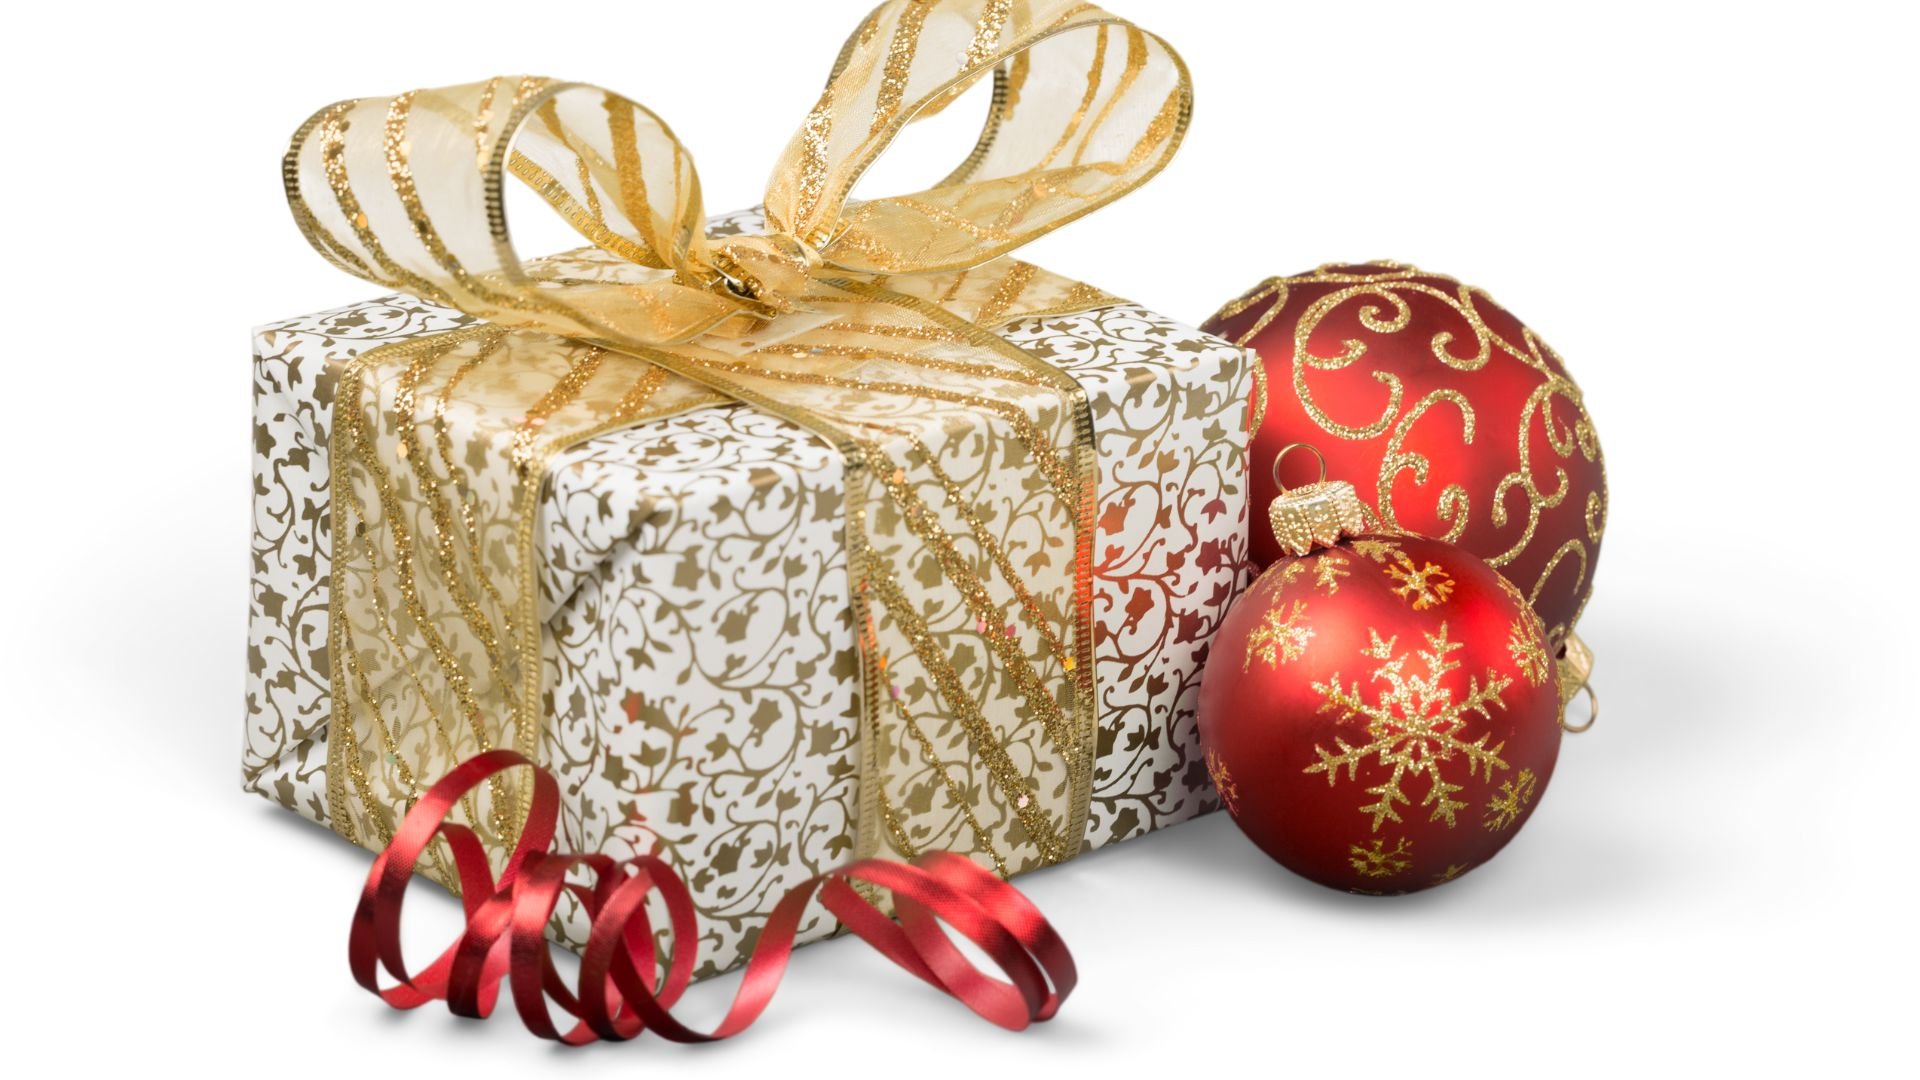 Imagem de fundo branco. Em destaque temos uma caixa de presente embrulhada em um papel branco decorada com desenhos dourados. Um laço de fita dourado está envolto da caixa e ao lado duas bolas de Natal nas cores vermelho e dourado.